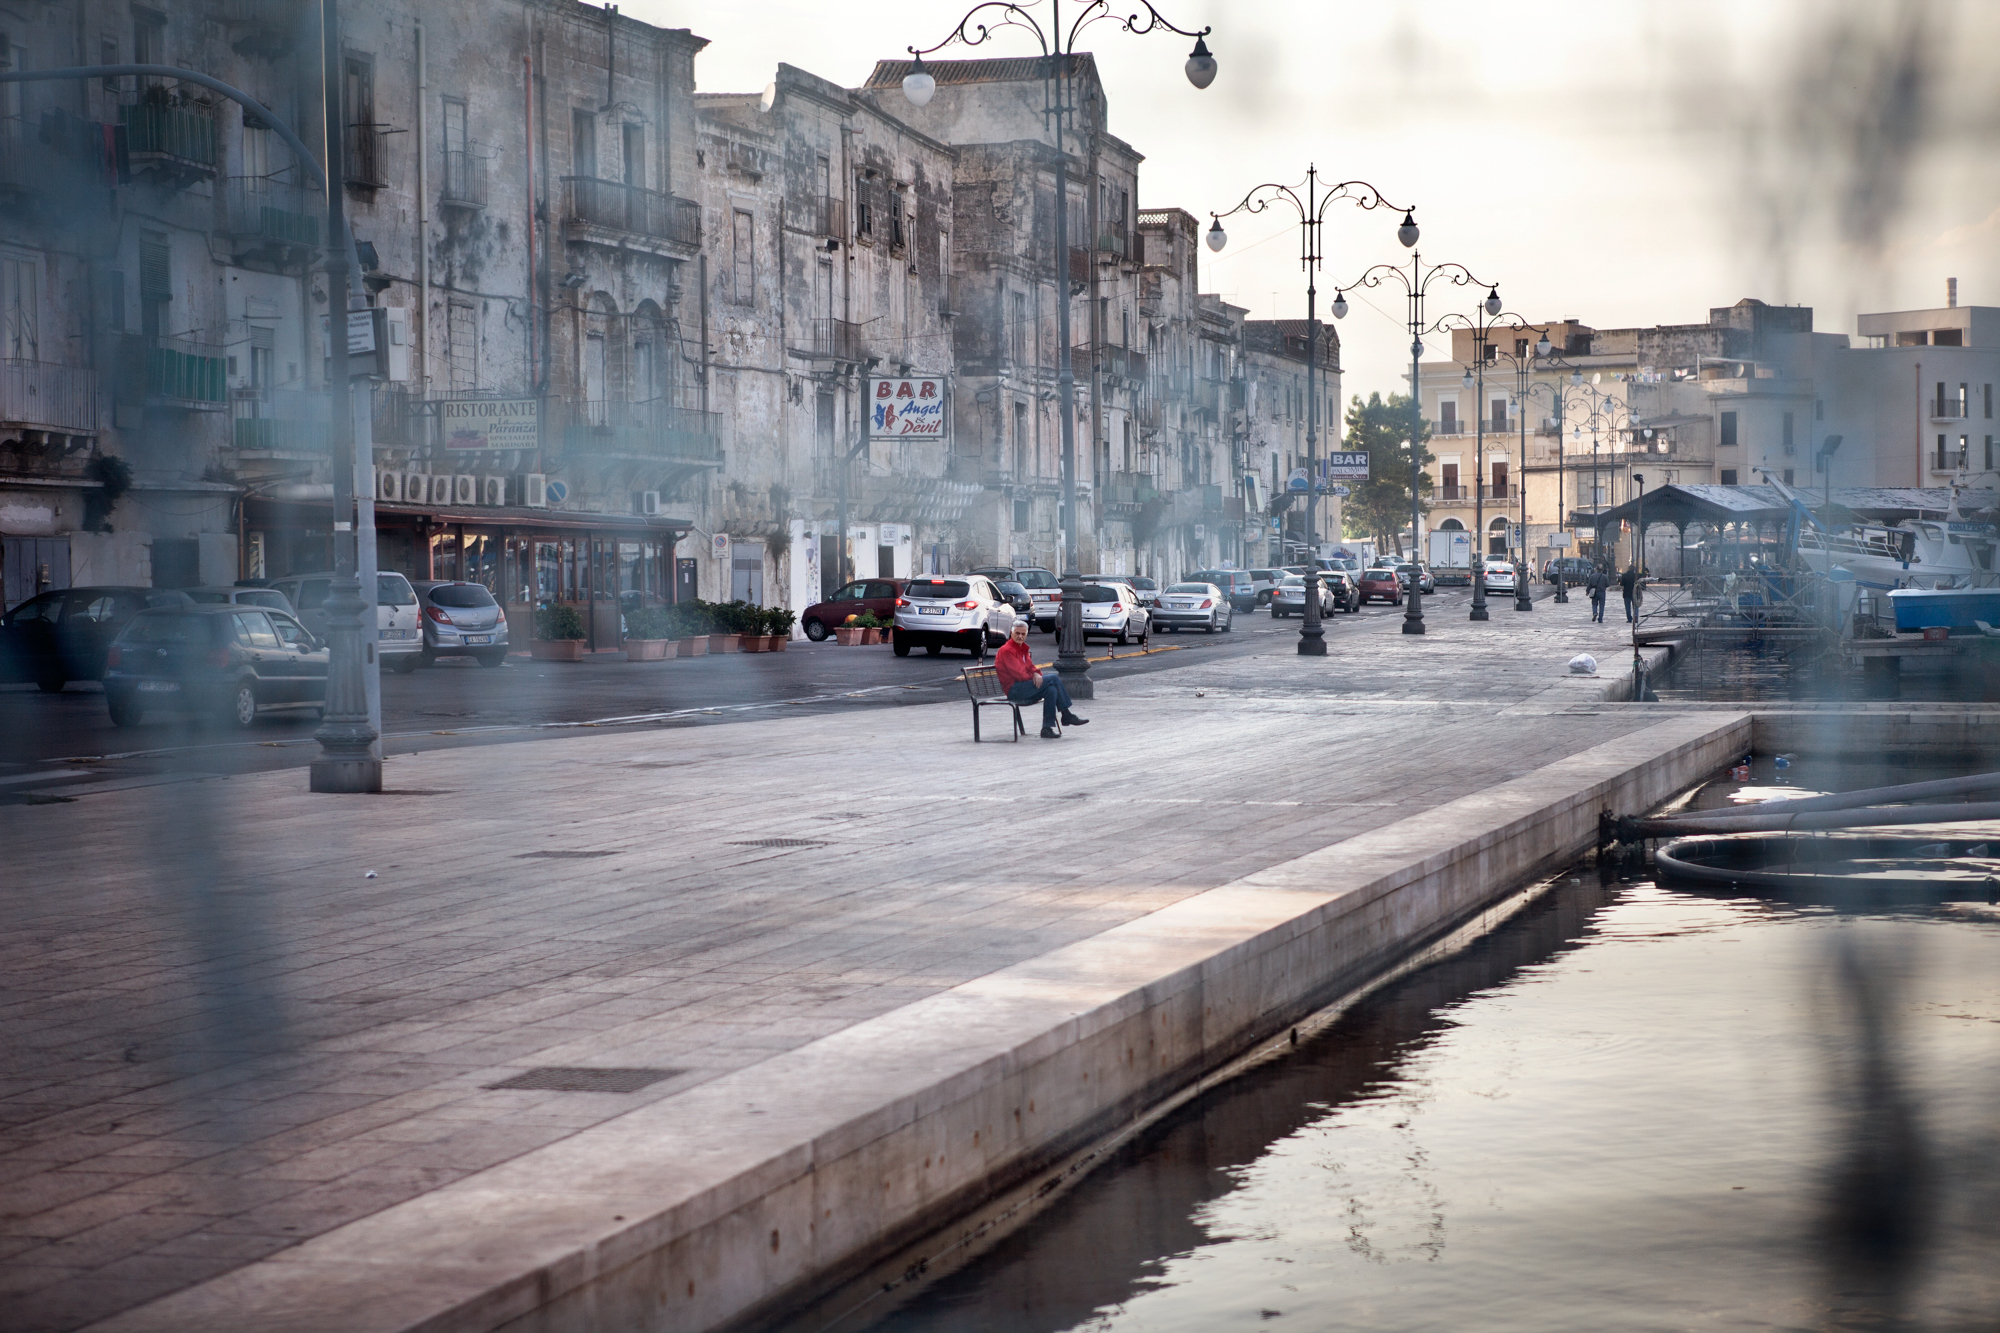  Taranto, Italia, 26 Settembre 2013. Parte bassa della Città Vecchia di Taranto, composta principalmente da case di pescatori. Nel 2011, l’amministrazione tarantina aveva attivato la procedura per far riconoscere la Città Vecchia come Patrimonio dell